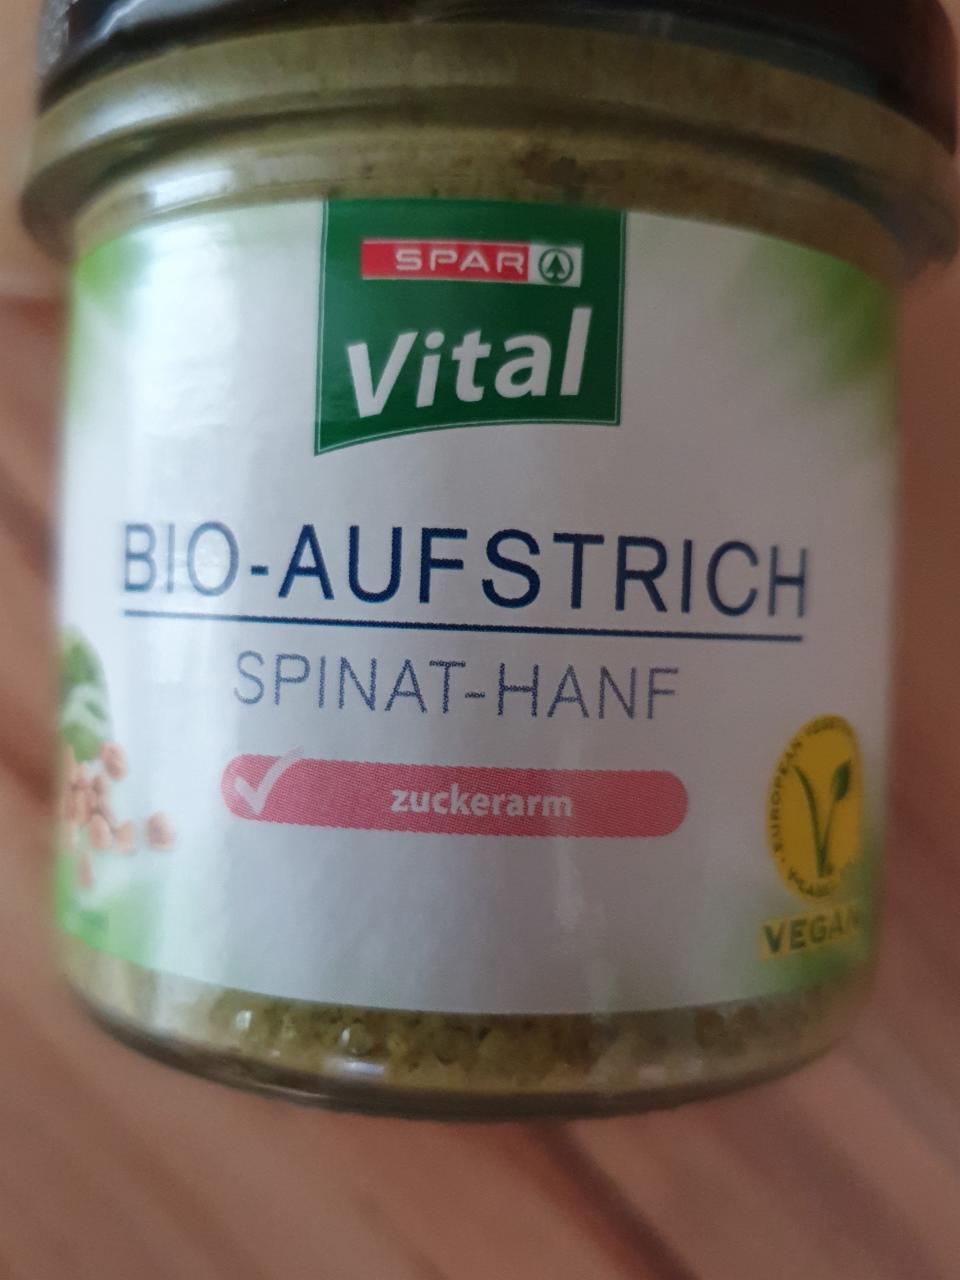 Fotografie - Bio-Aufstrich Spinat Hanf Spar Vital